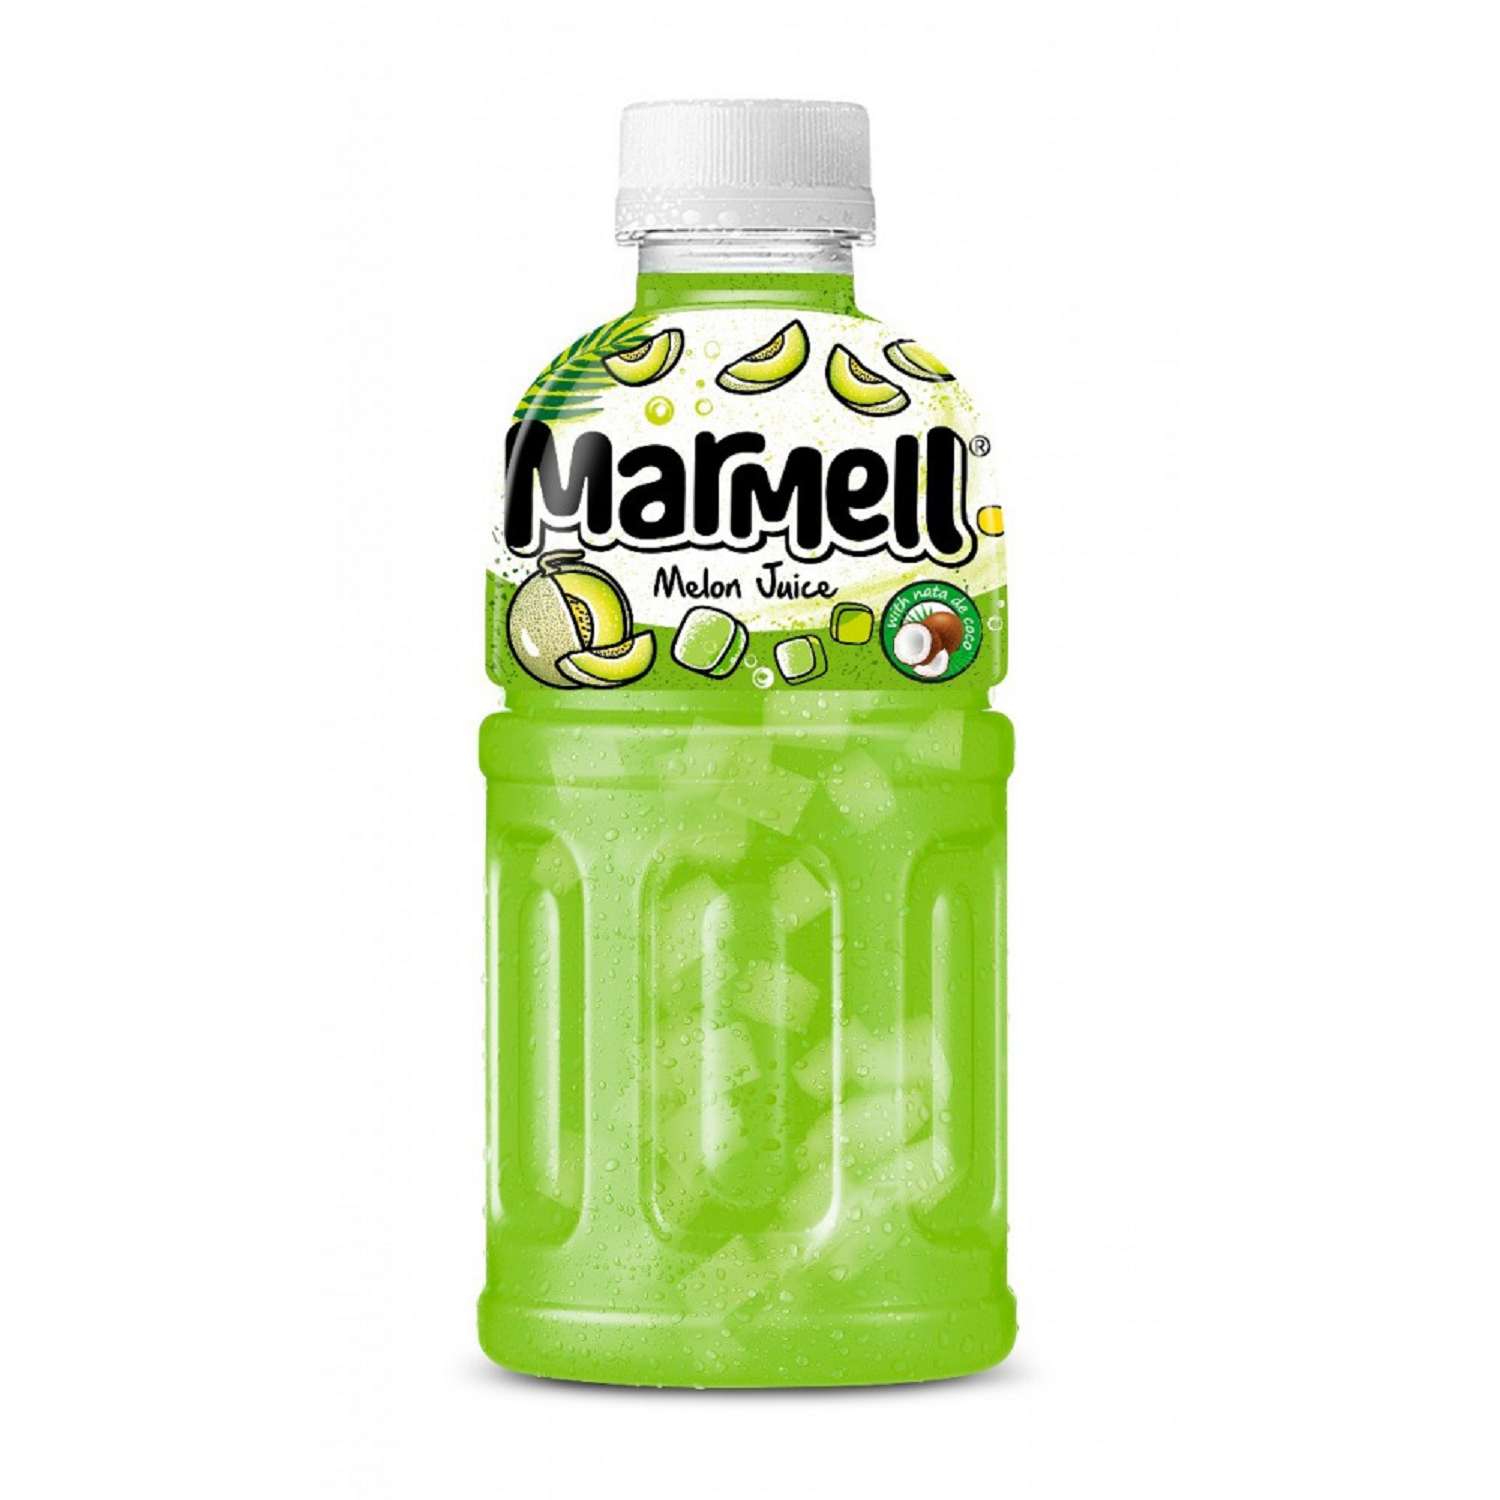 Вода ната. Напиток Мармелл 0.32. Напиток сокосодержащий Ната де Коко с. Marmell напиток дыня с кусочками кокосового желе 0.32 л. Marmell напиток с/с дыня/личи/манго Ната де Коко 0.32л.